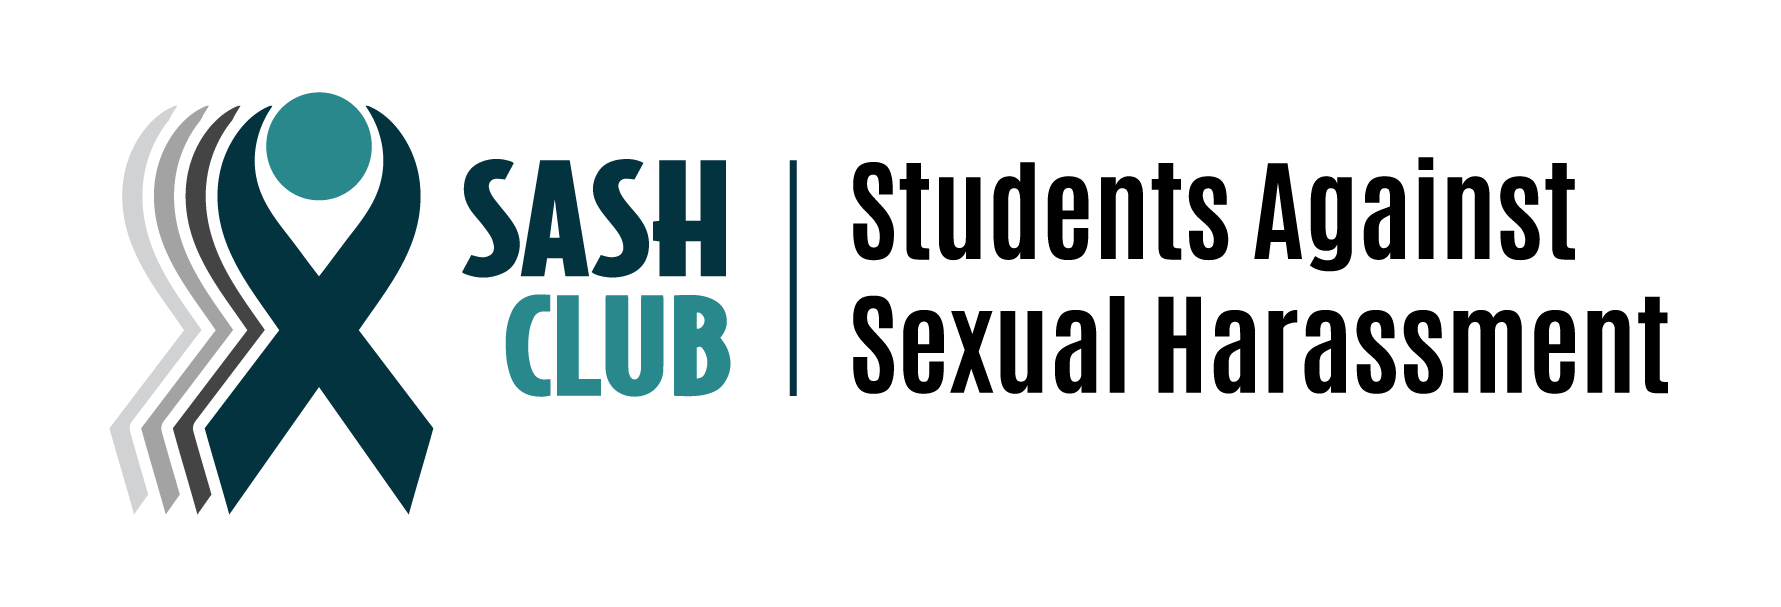 SASH Club